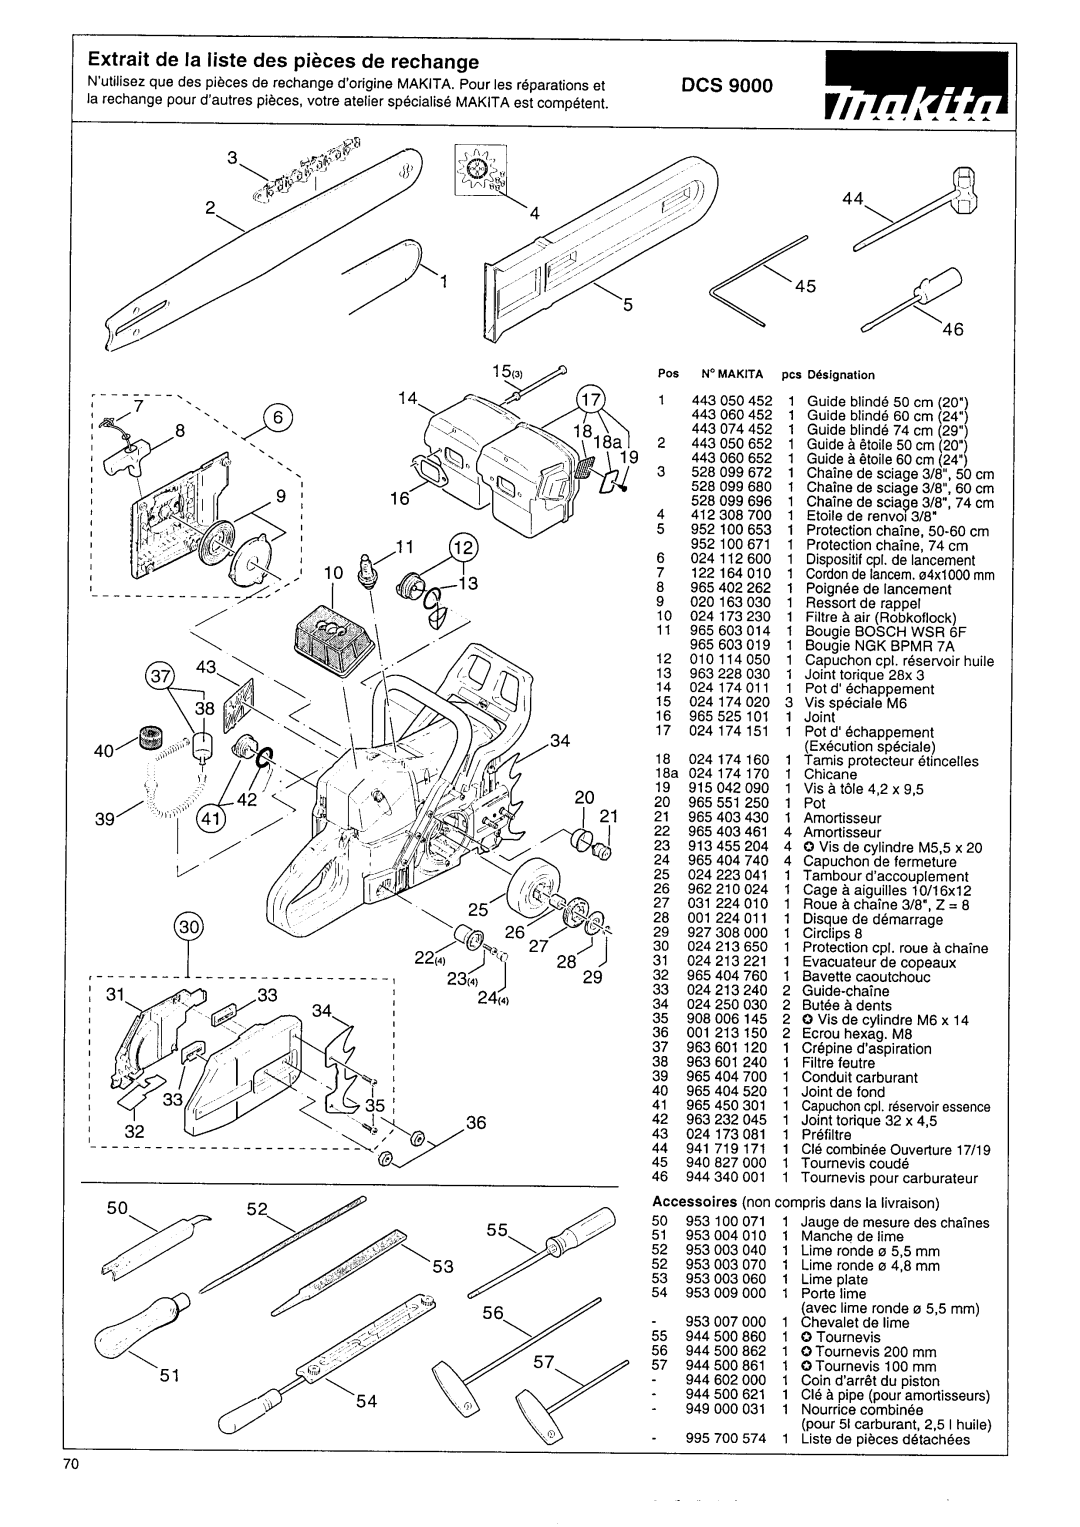 Makita DCS 9000 manual Extrait de la liste des pieces de rechange 